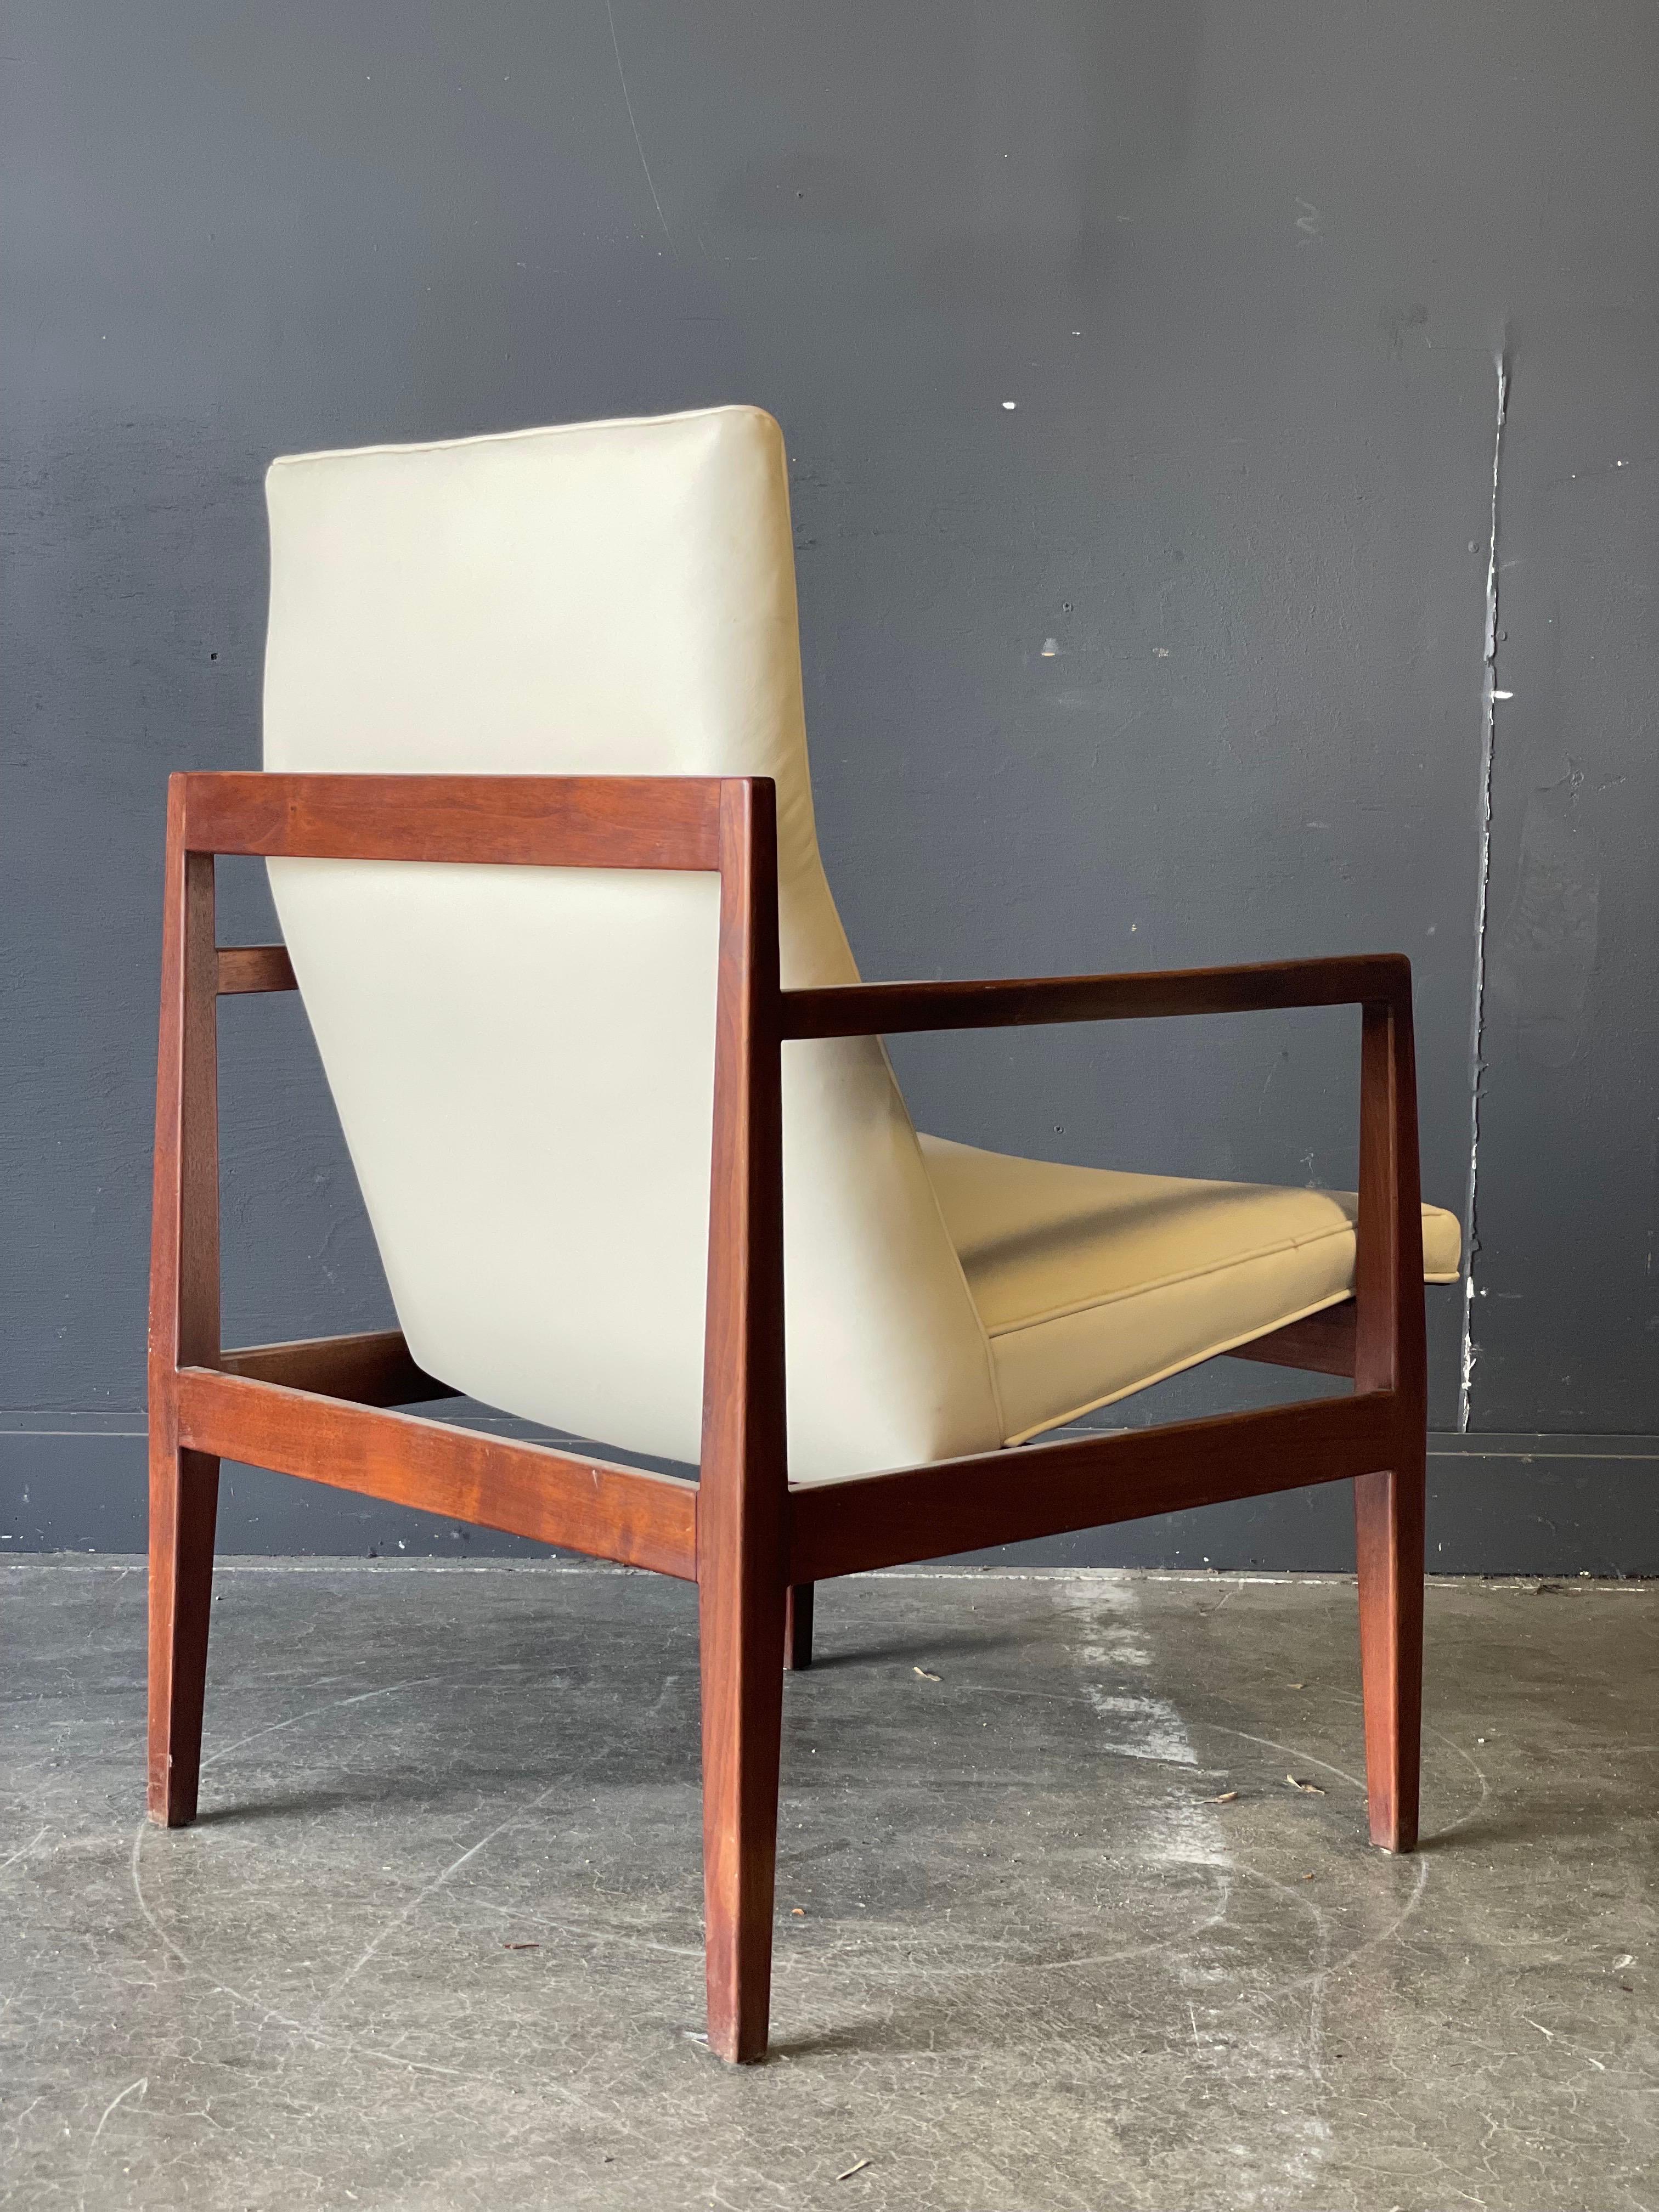 Ein klassischer offener Armlehnstuhl von Jens Risom aus der Mitte des Jahrhunderts, ca. 1965. Gepolstert mit einem Sitz aus weißem Leder. Schönes, geschnitztes Nussbaumholz ist ergonomisch geformt für Ihren Komfort und Ihr visuelles Vergnügen.